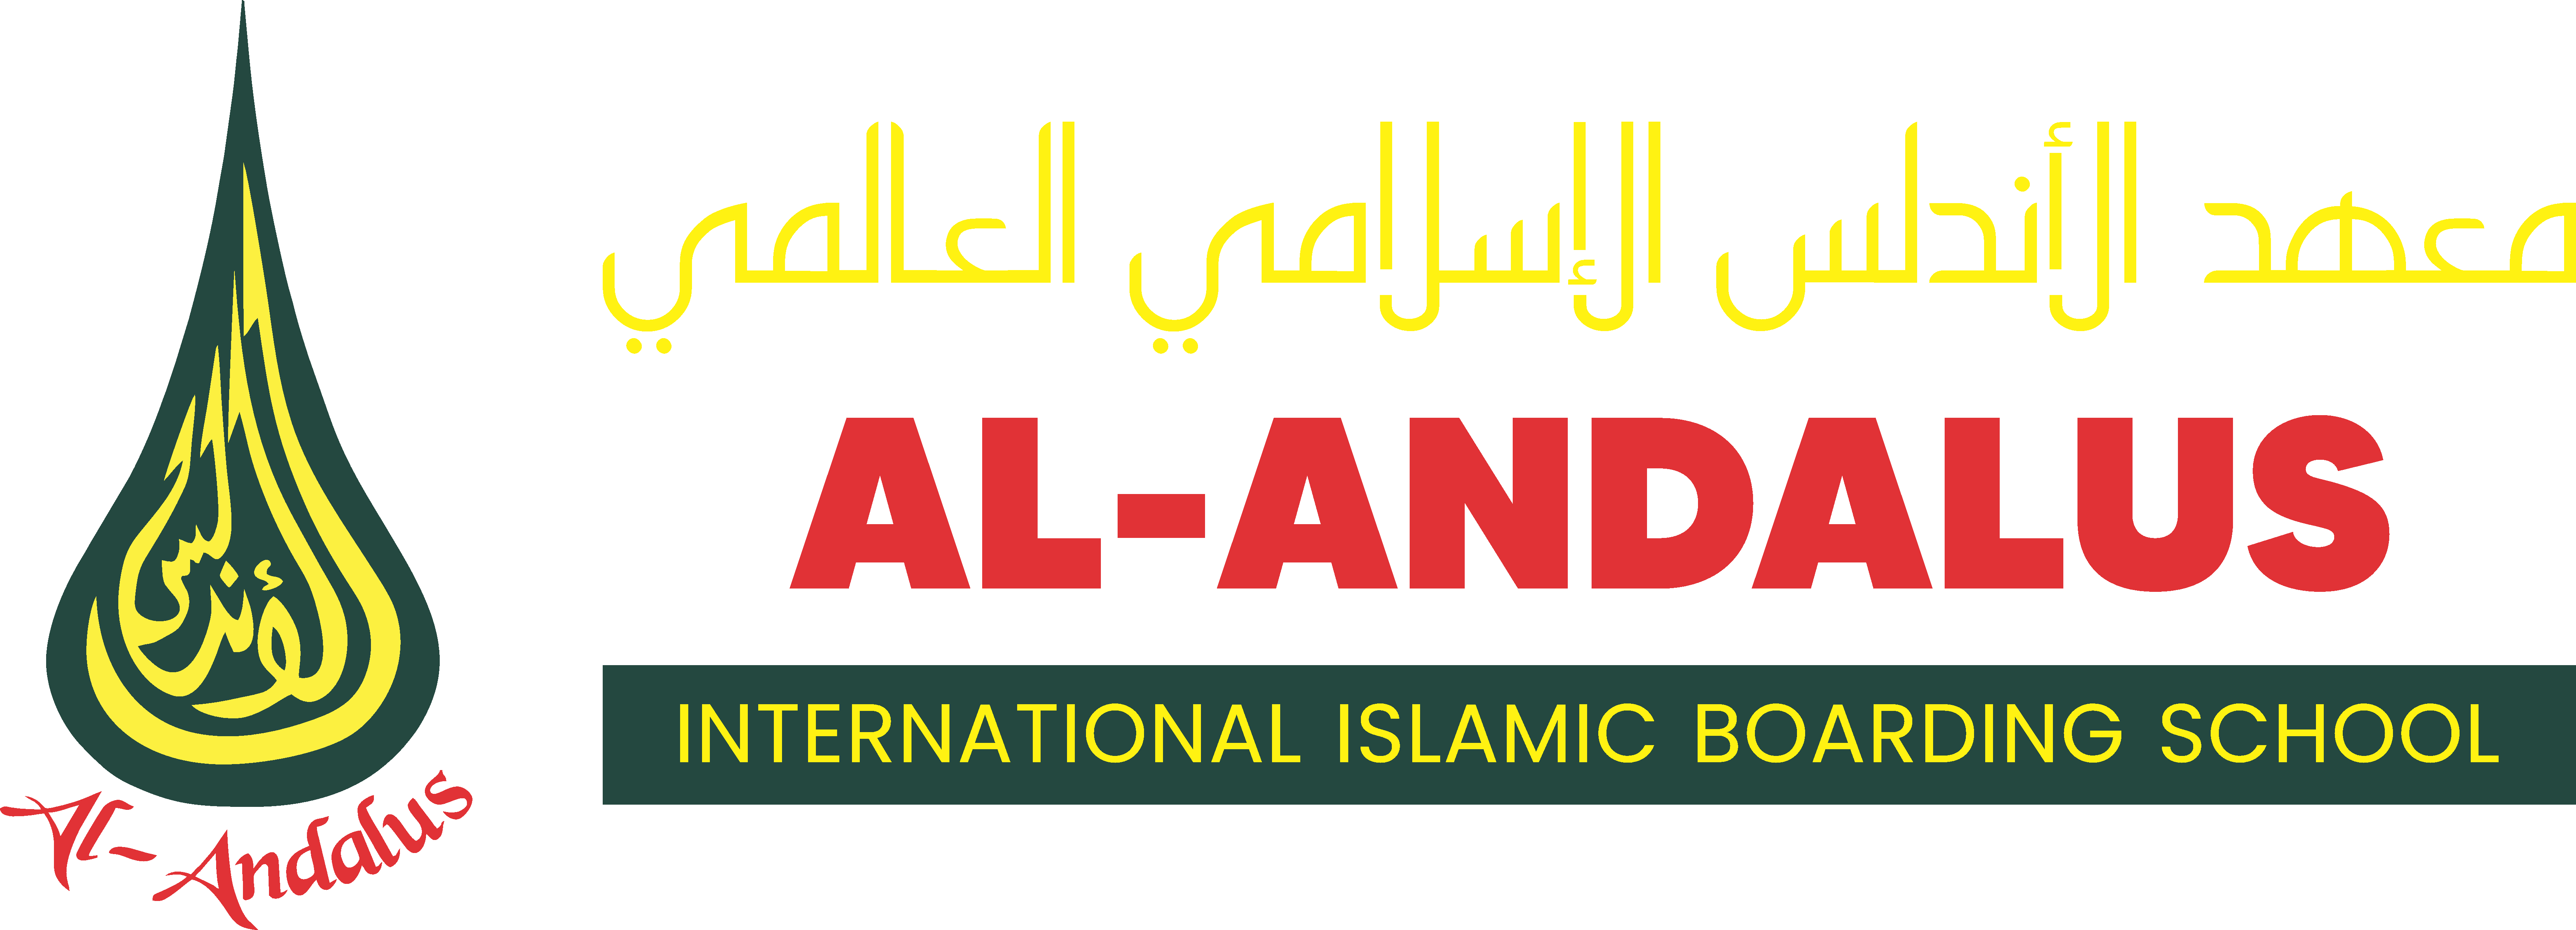 Pesantren Islam Internasional Al-Andalus